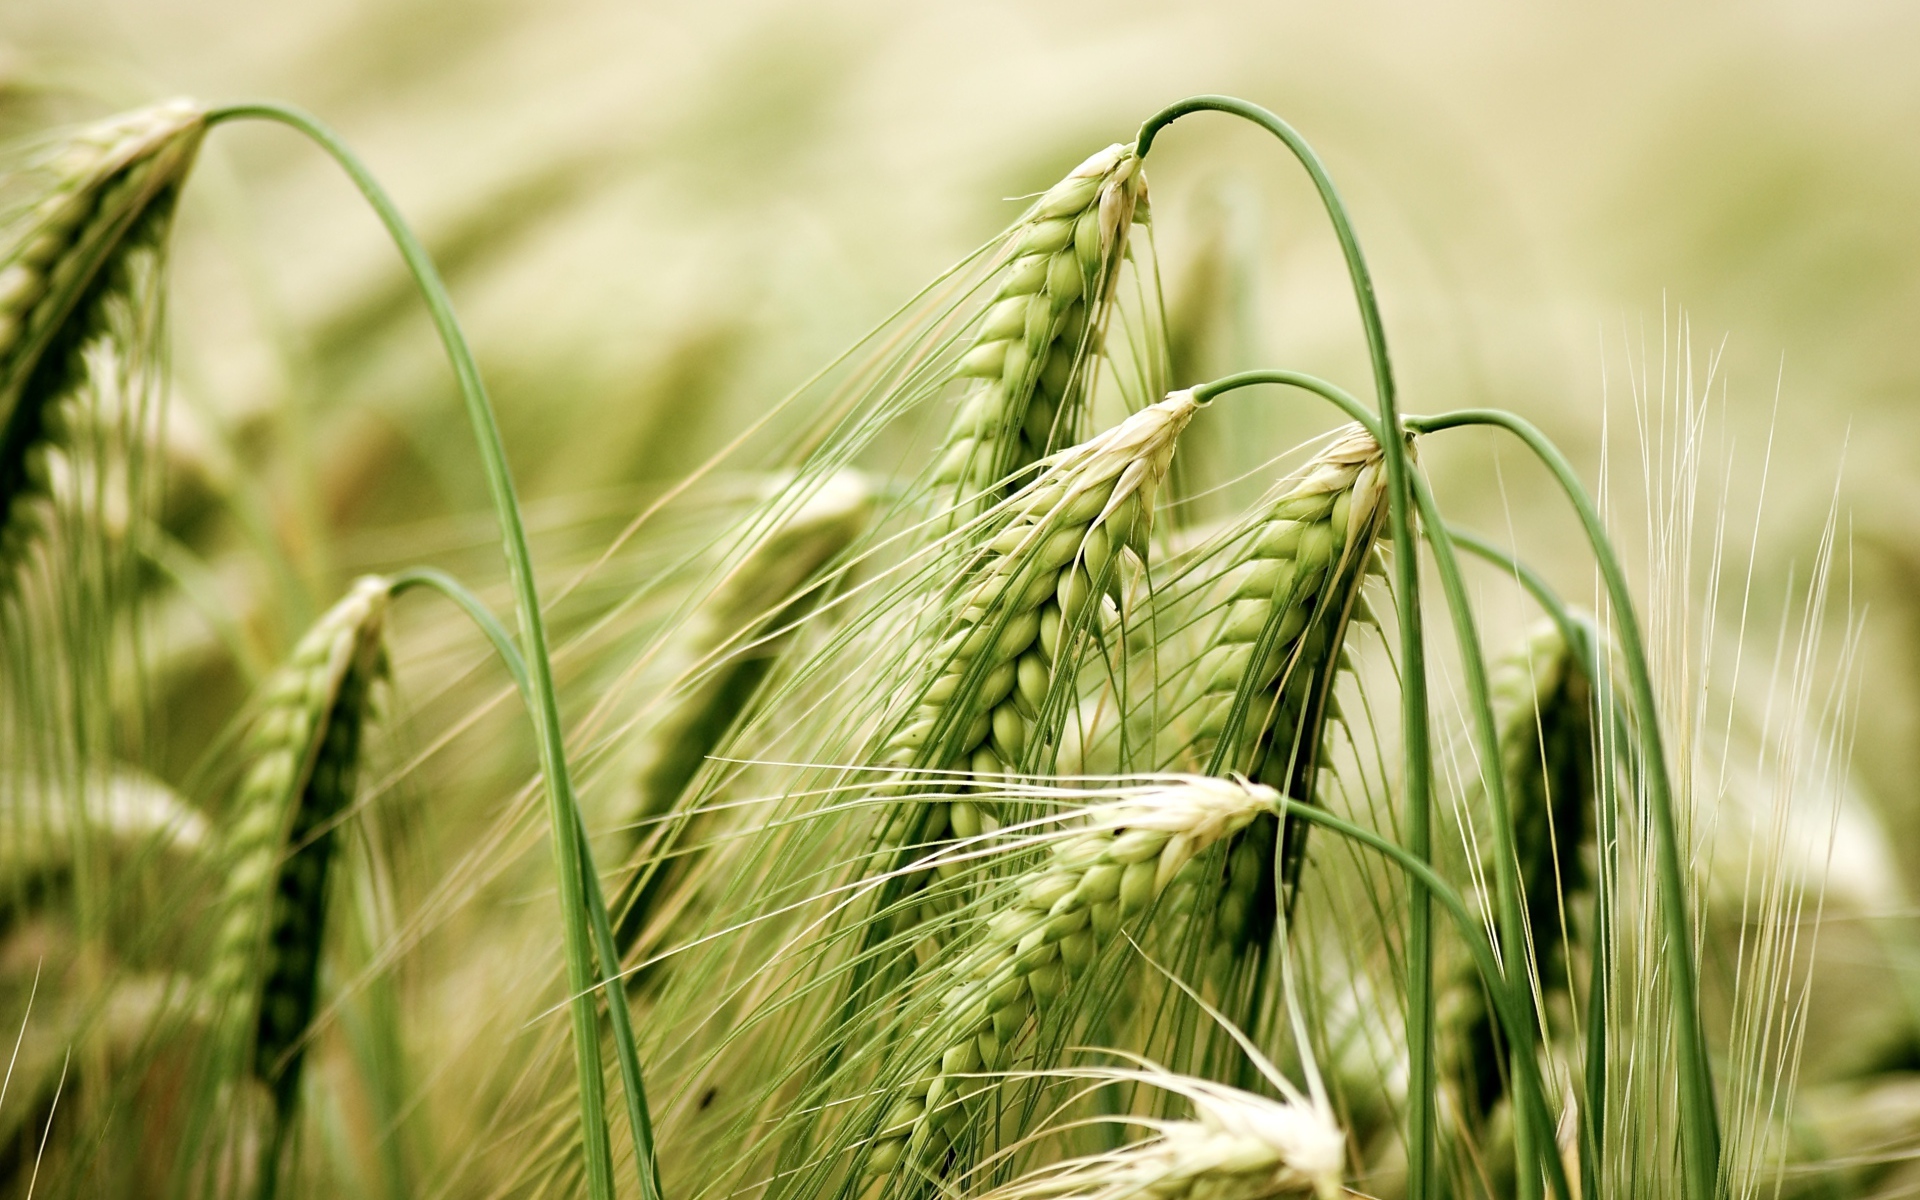 Зеленые колосья пшеницы крупным планом